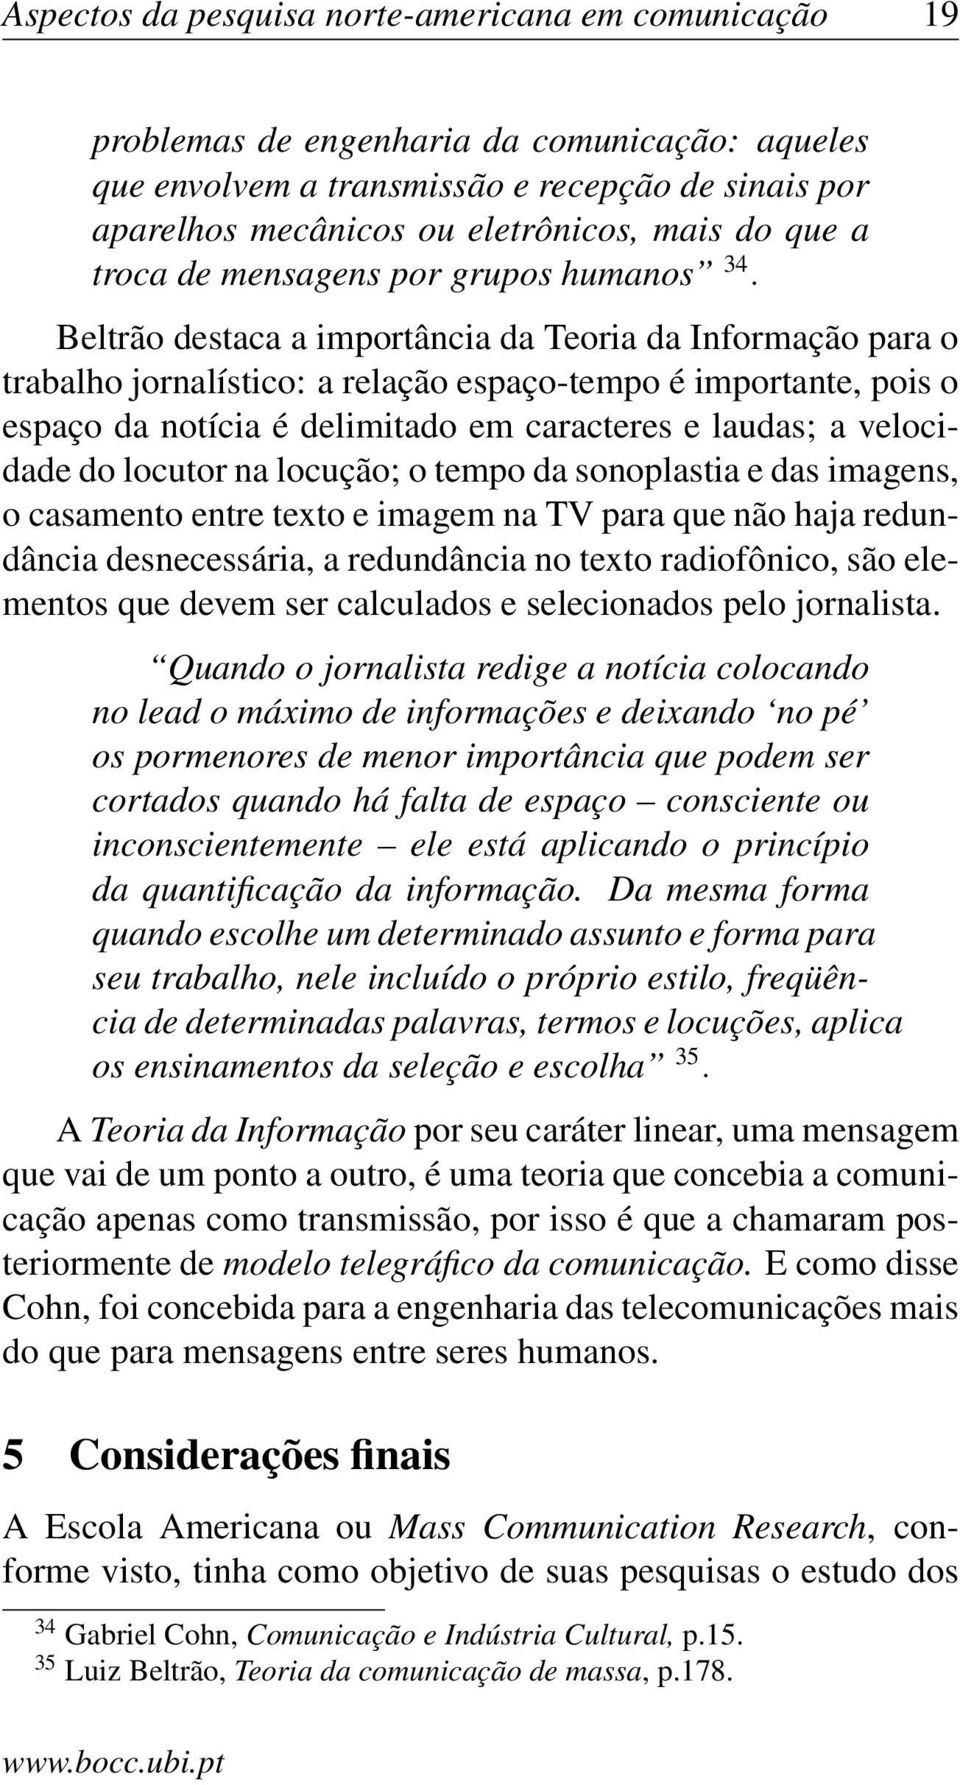 Beltrão destaca a importância da Teoria da Informação para o trabalho jornalístico: a relação espaço-tempo é importante, pois o espaço da notícia é delimitado em caracteres e laudas; a velocidade do